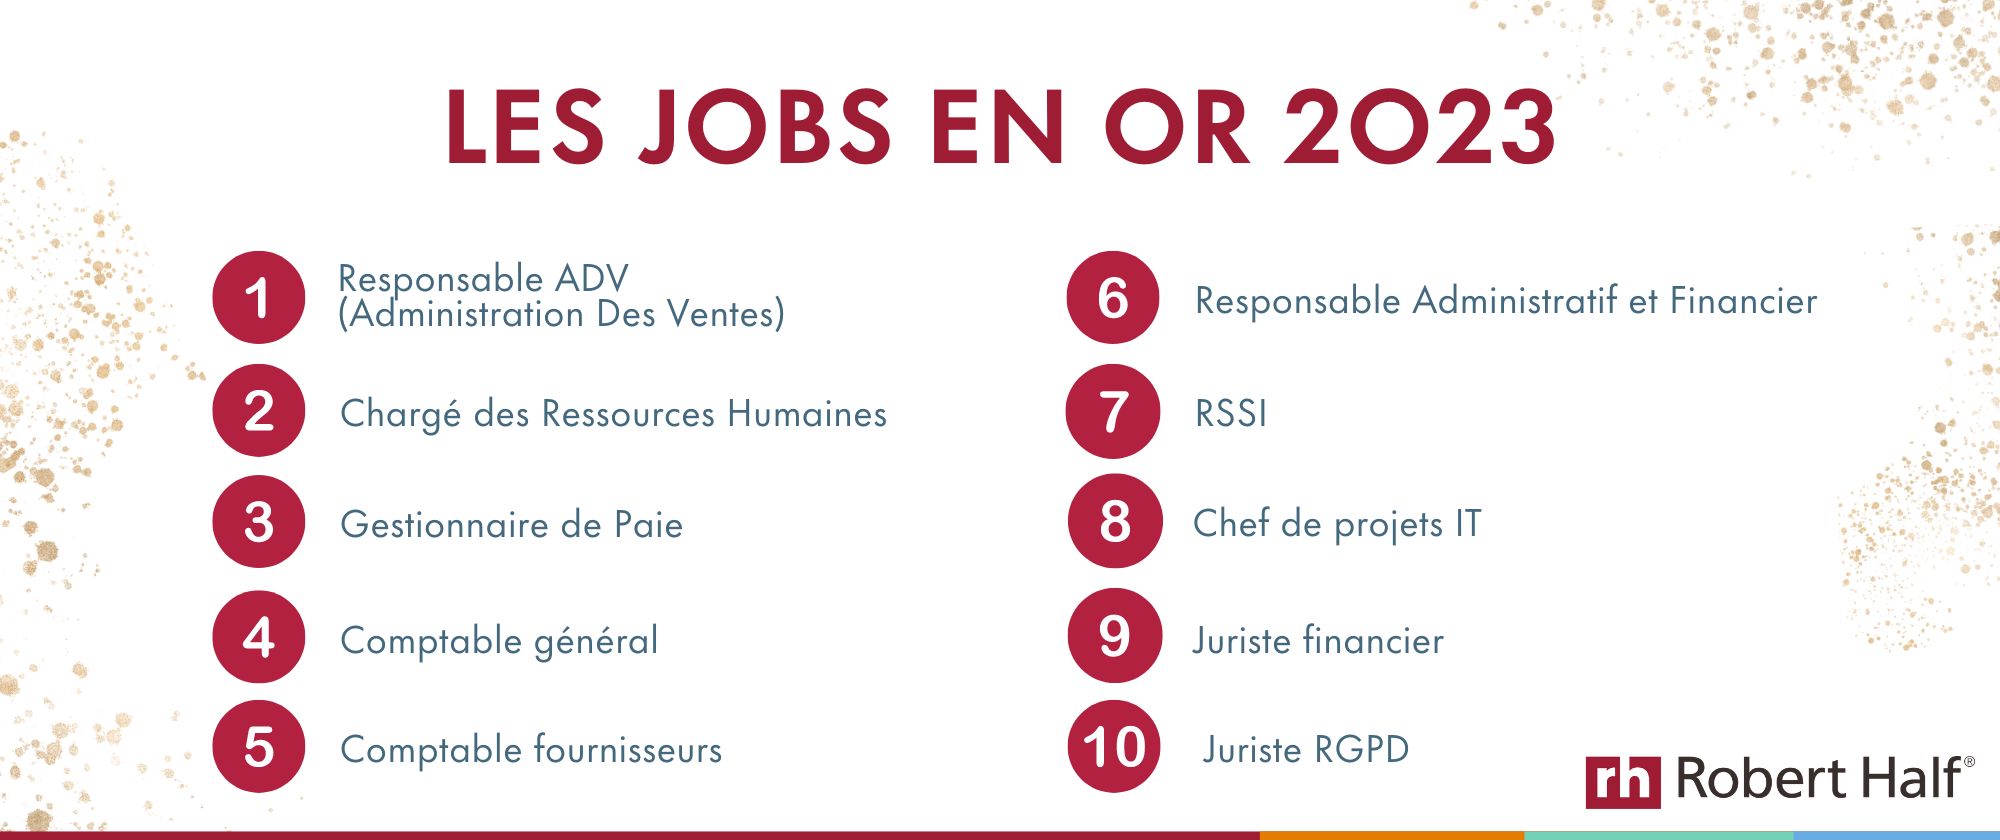 Top 10 jobs en Or